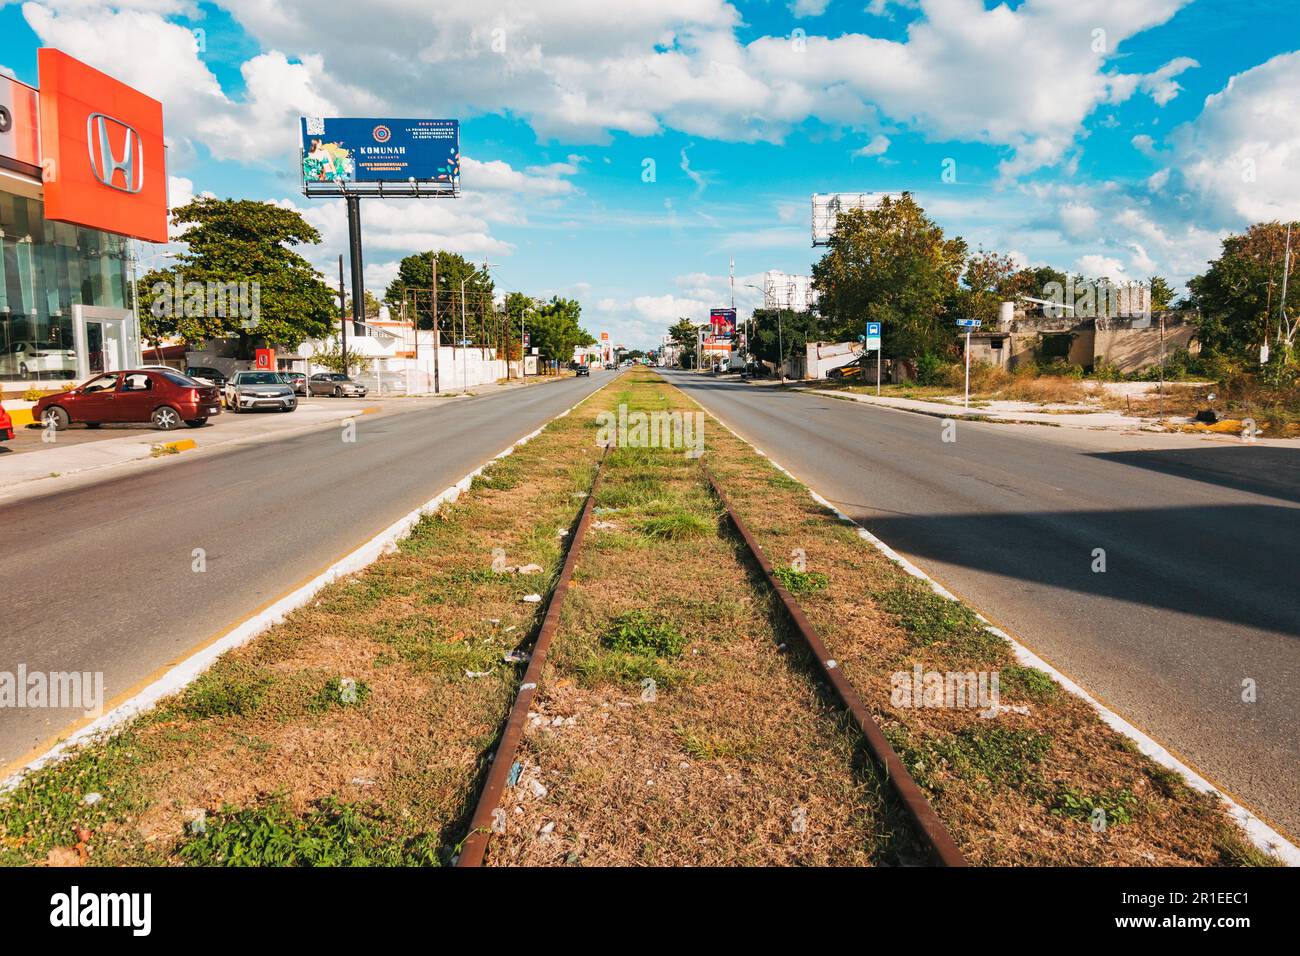 Stillgelegte Bahngleise in einer Straße in Merida, Mexiko. Die Region Yucatán verfügte von 1865 bis Mitte des 20. Jahrhunderts über ein geschäftiges Eisenbahnnetz. Stockfoto